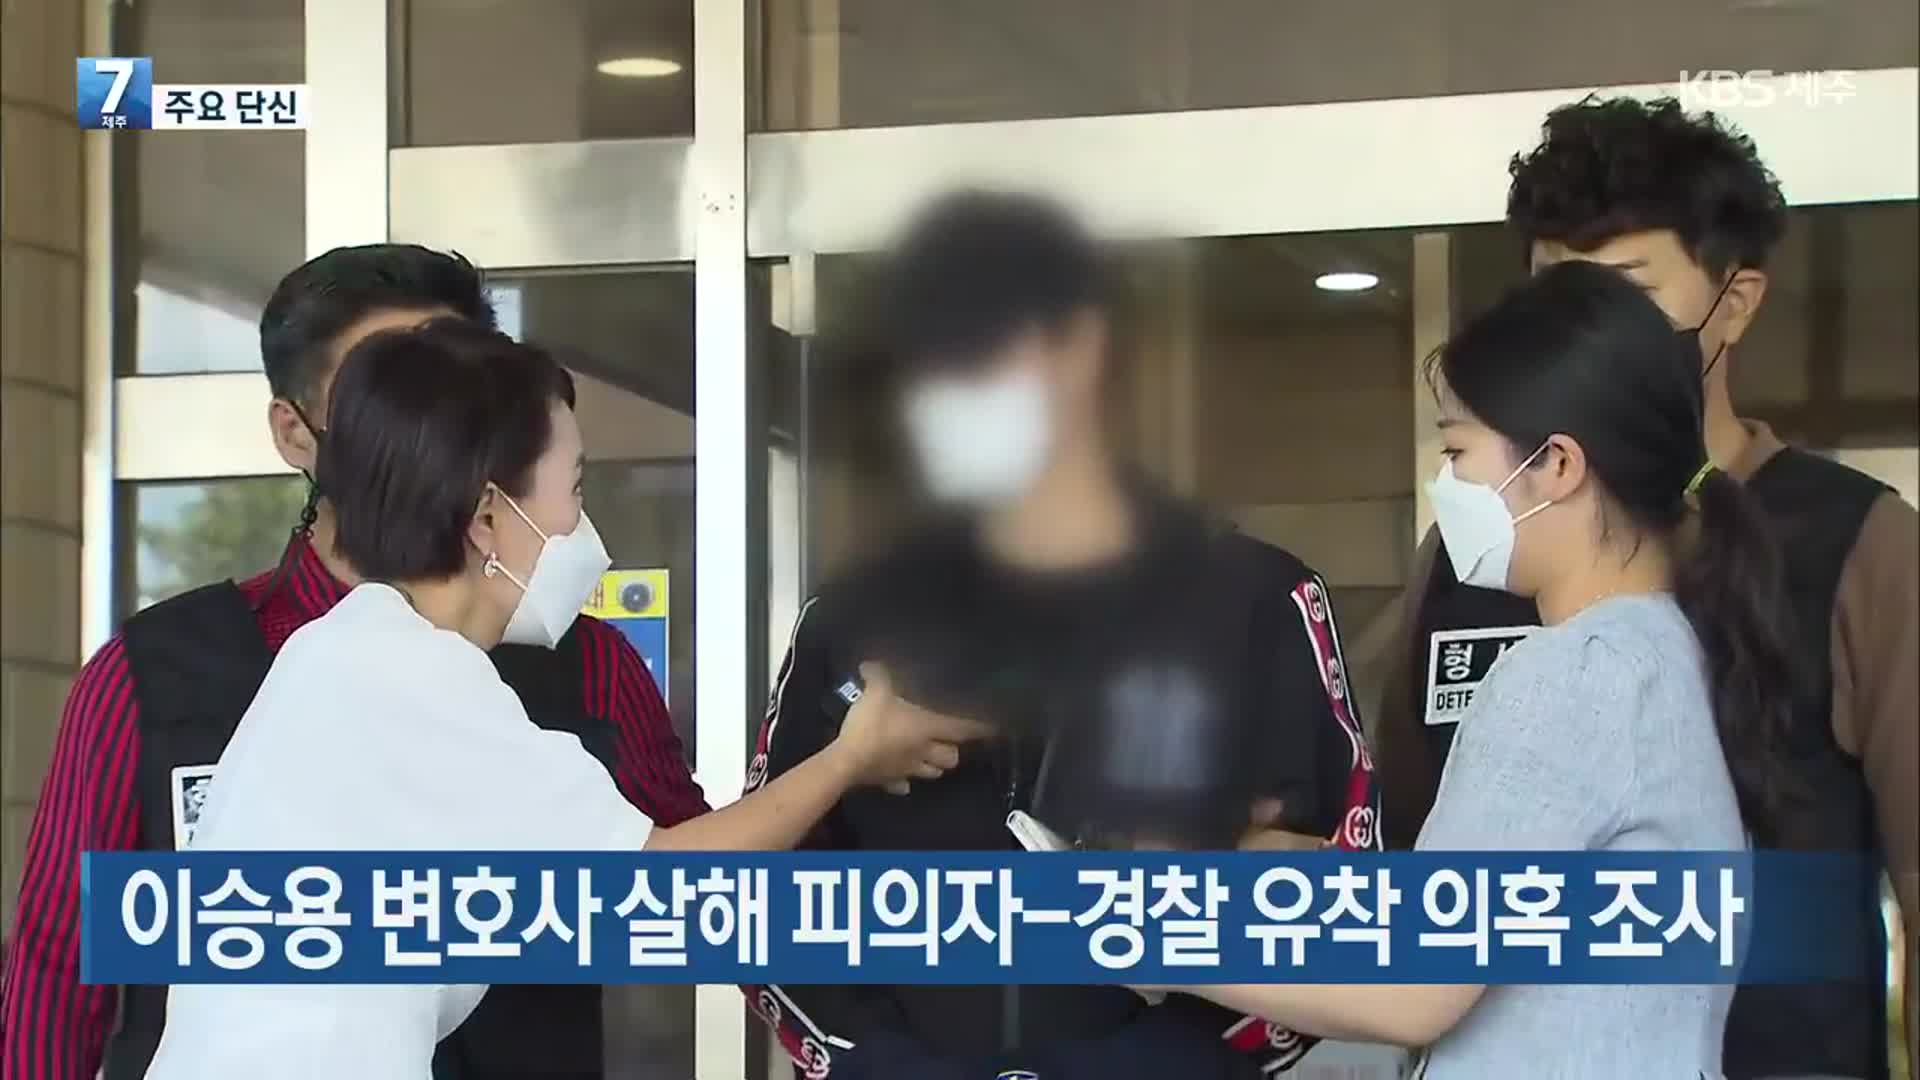 [주요 단신] 이승용 변호사 살해 피의자-경찰 유착 의혹 조사 외